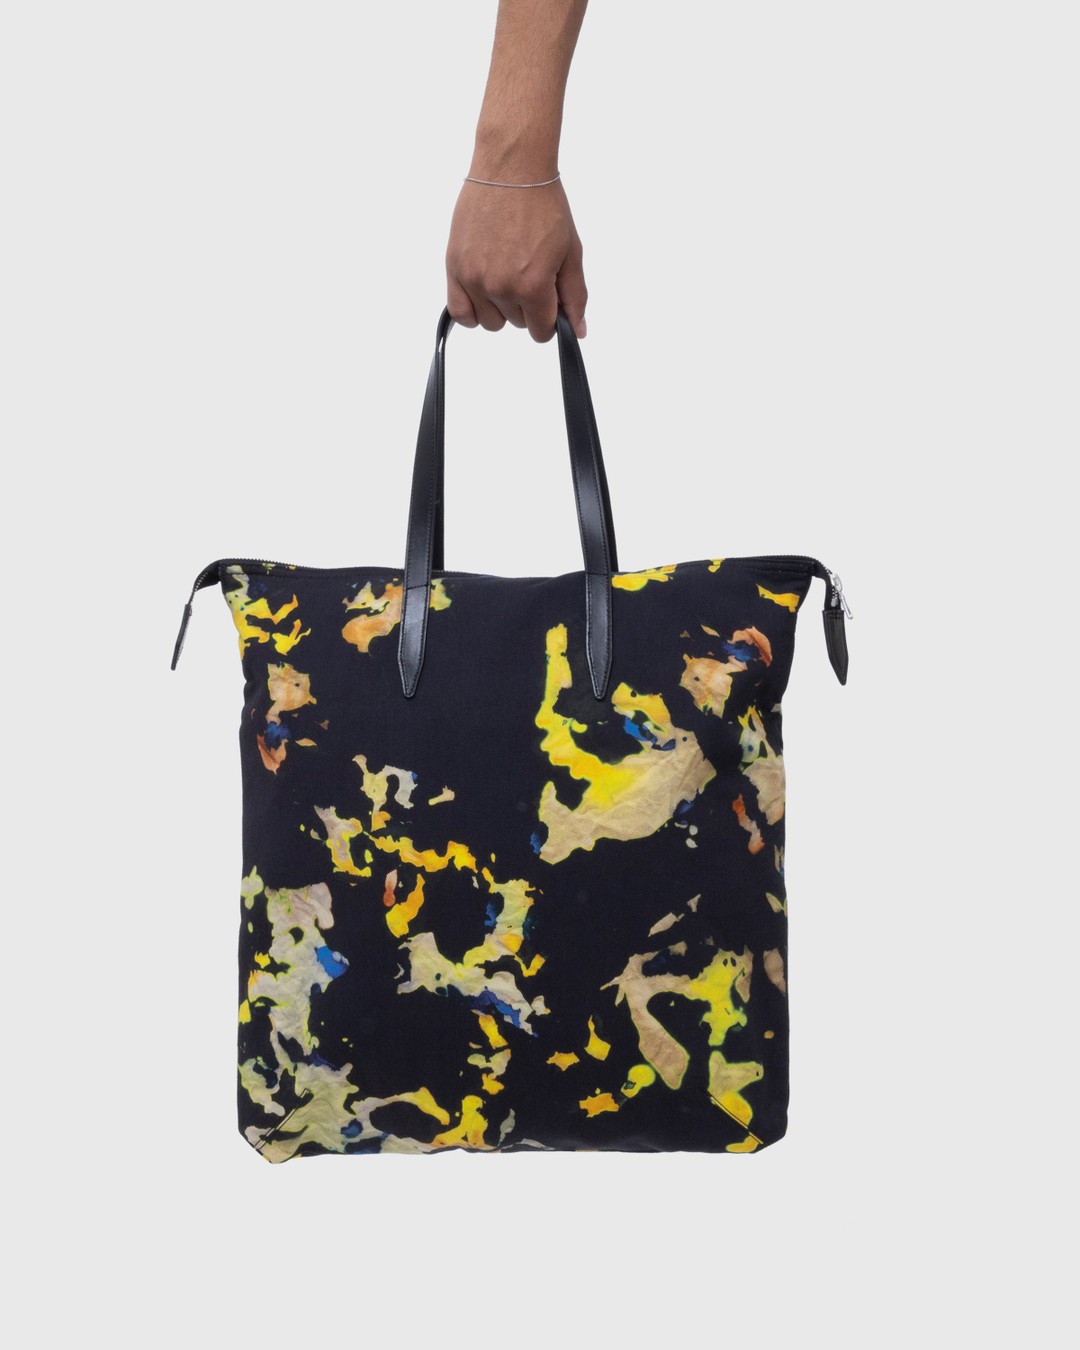 Dries van Noten – Printed Tote Bag Multi - Tote Bags - Multi - Image 4